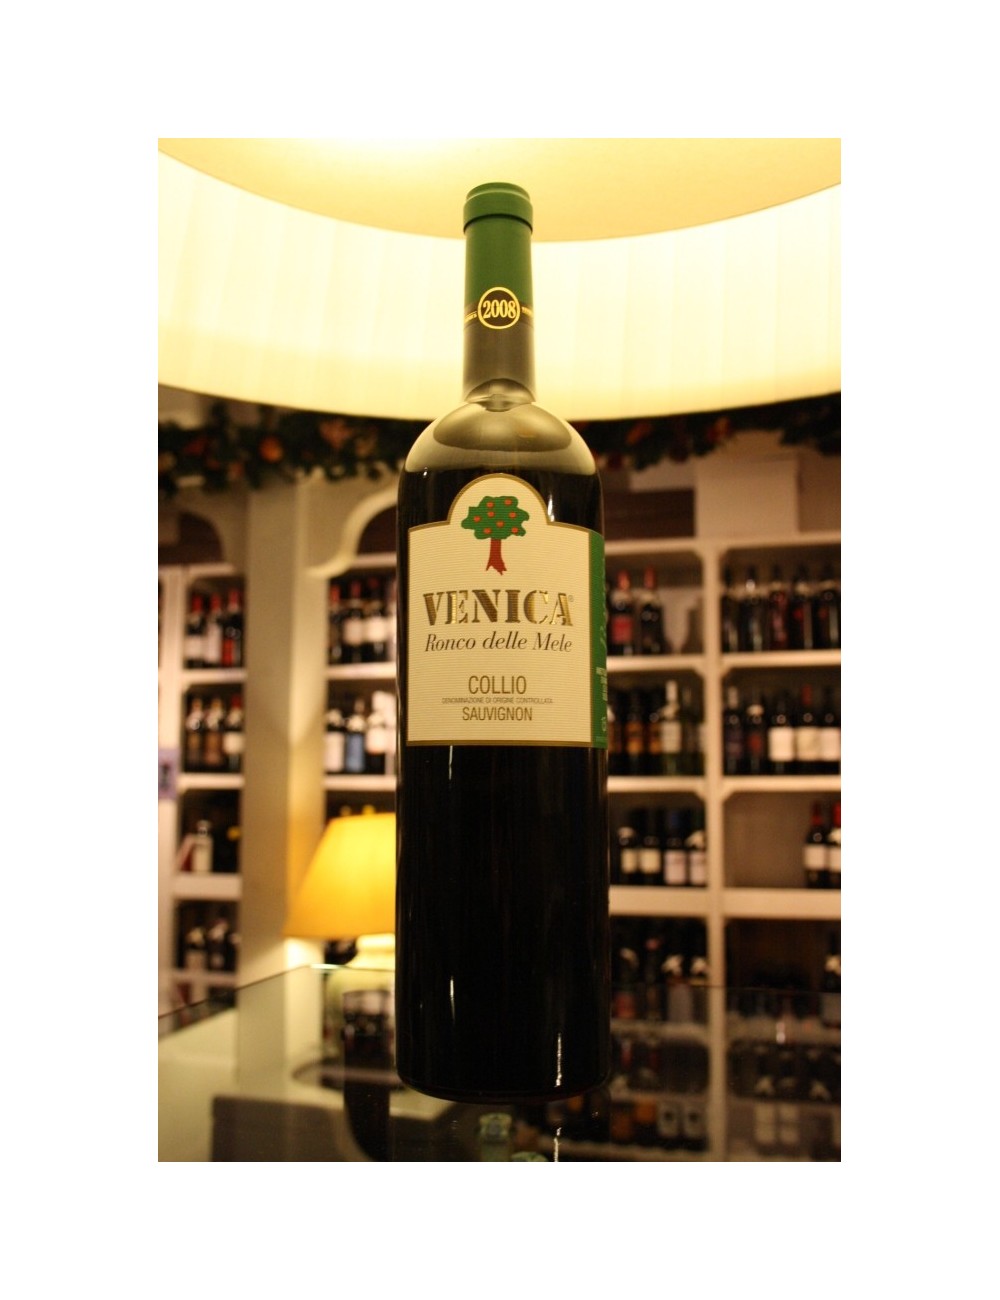 Venica & Venica RONCO DELLE MELE Sauvignon 2008 lt 1,5